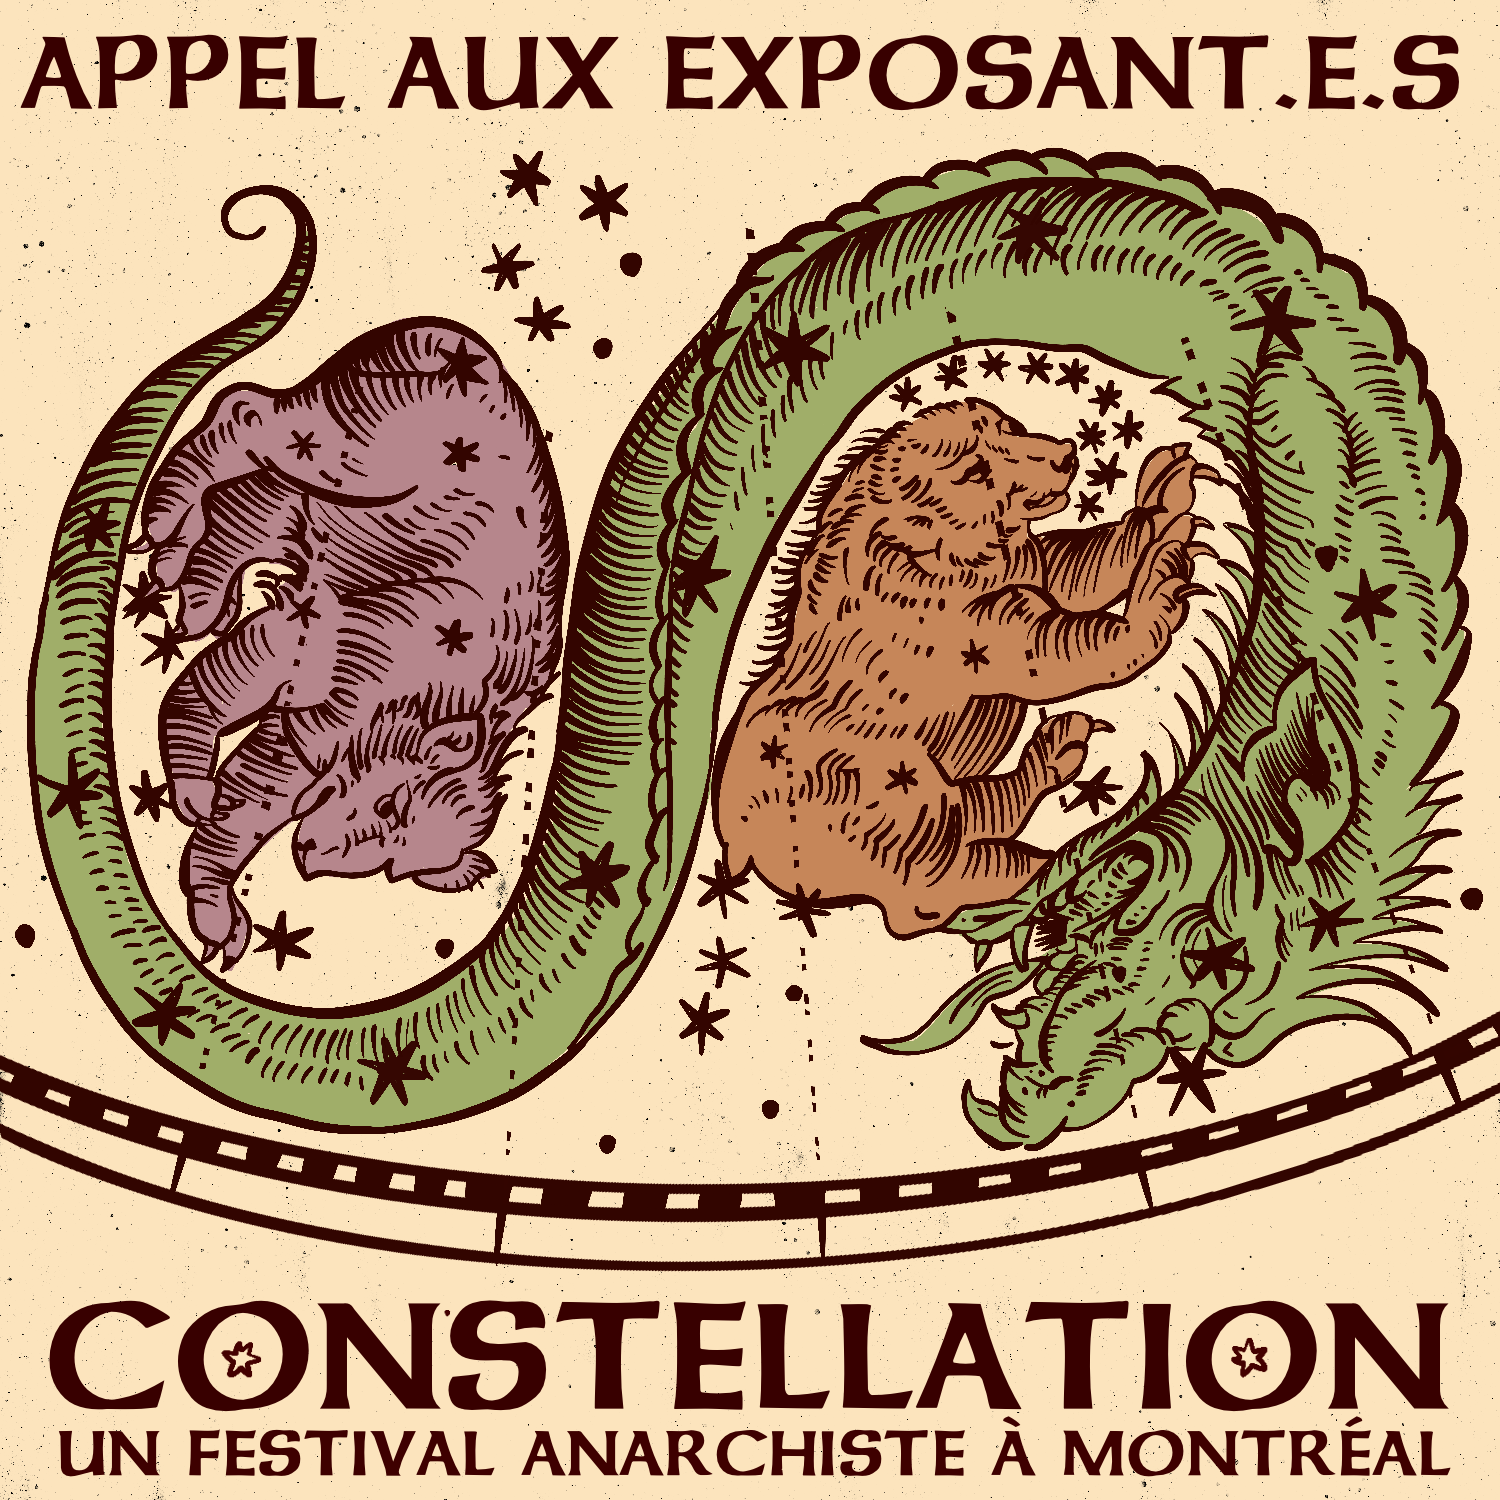 Appel aux exposant.e.s - CONSTELLATION: Un festival anarchiste à Montréal